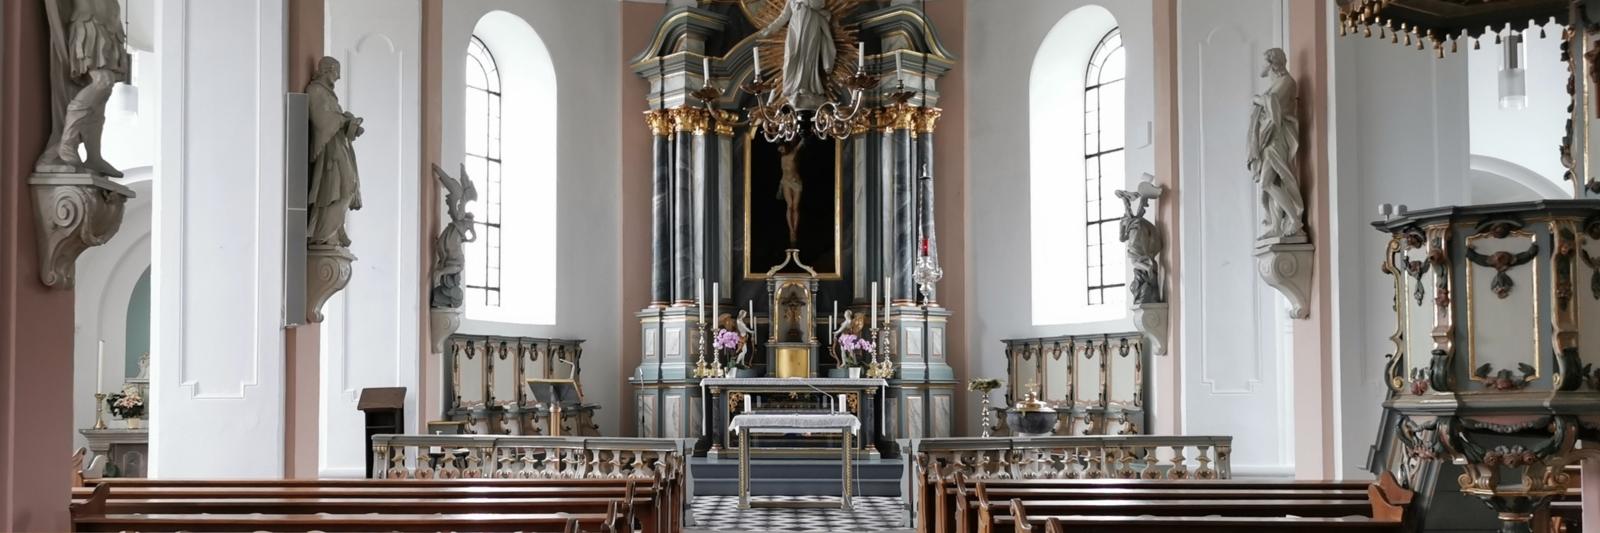 Versteckte Schätze, eine besondere Atmosphäre und skurrile Knochen: Das alles gibt es in St. Andreas in Neuss-Norf zu entdecken. In diesem Jahr feiert die Kirche gleich mehrere Jubiläen.